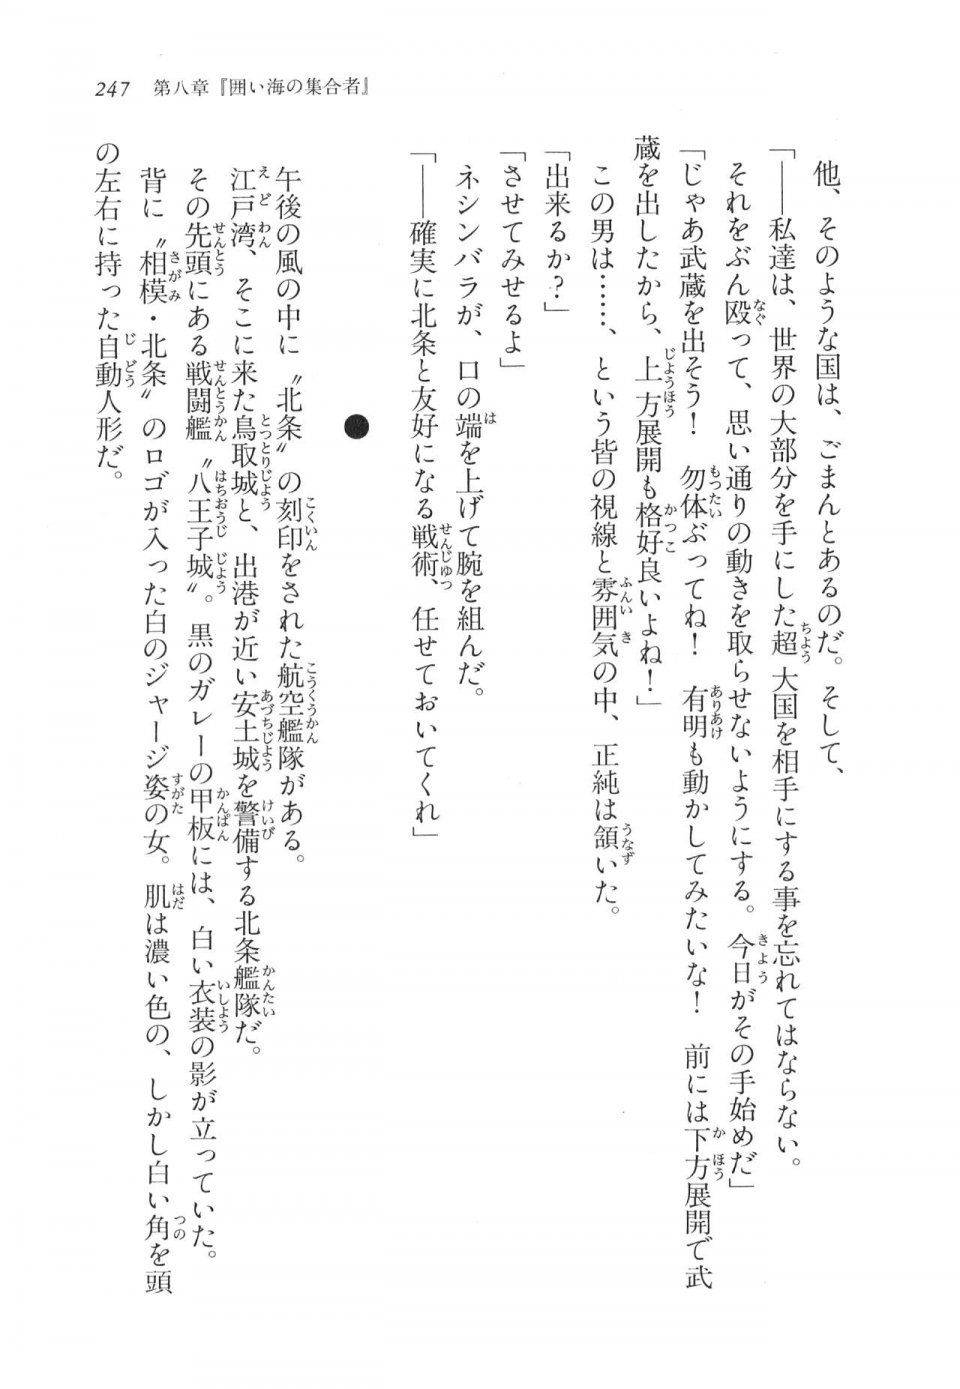 Kyoukai Senjou no Horizon LN Vol 11(5A) - Photo #247